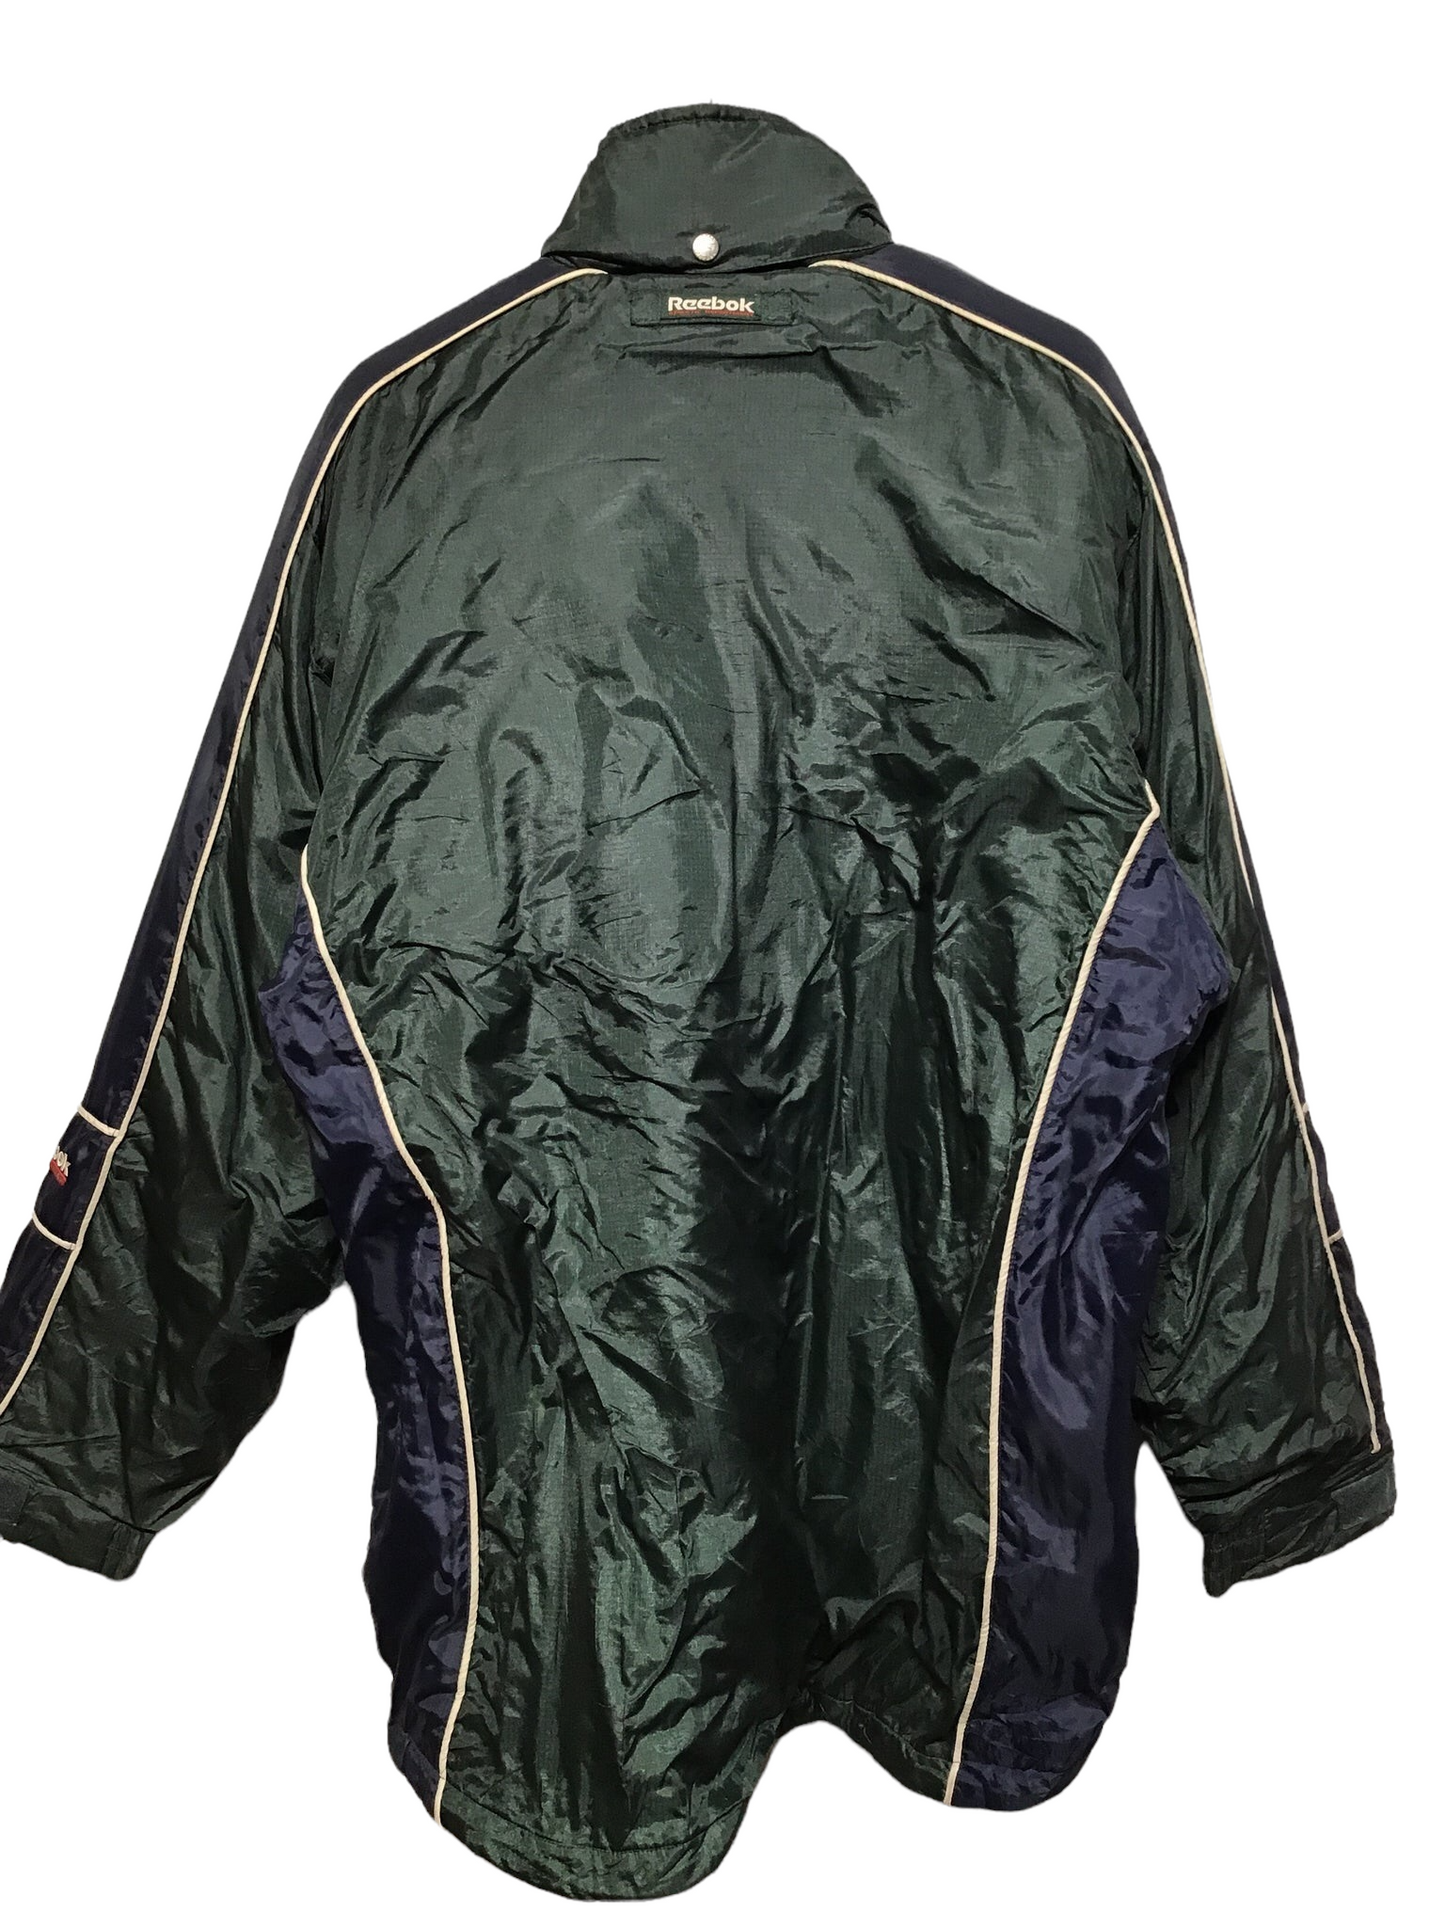 Reebok Sports Jacket (Size XL)